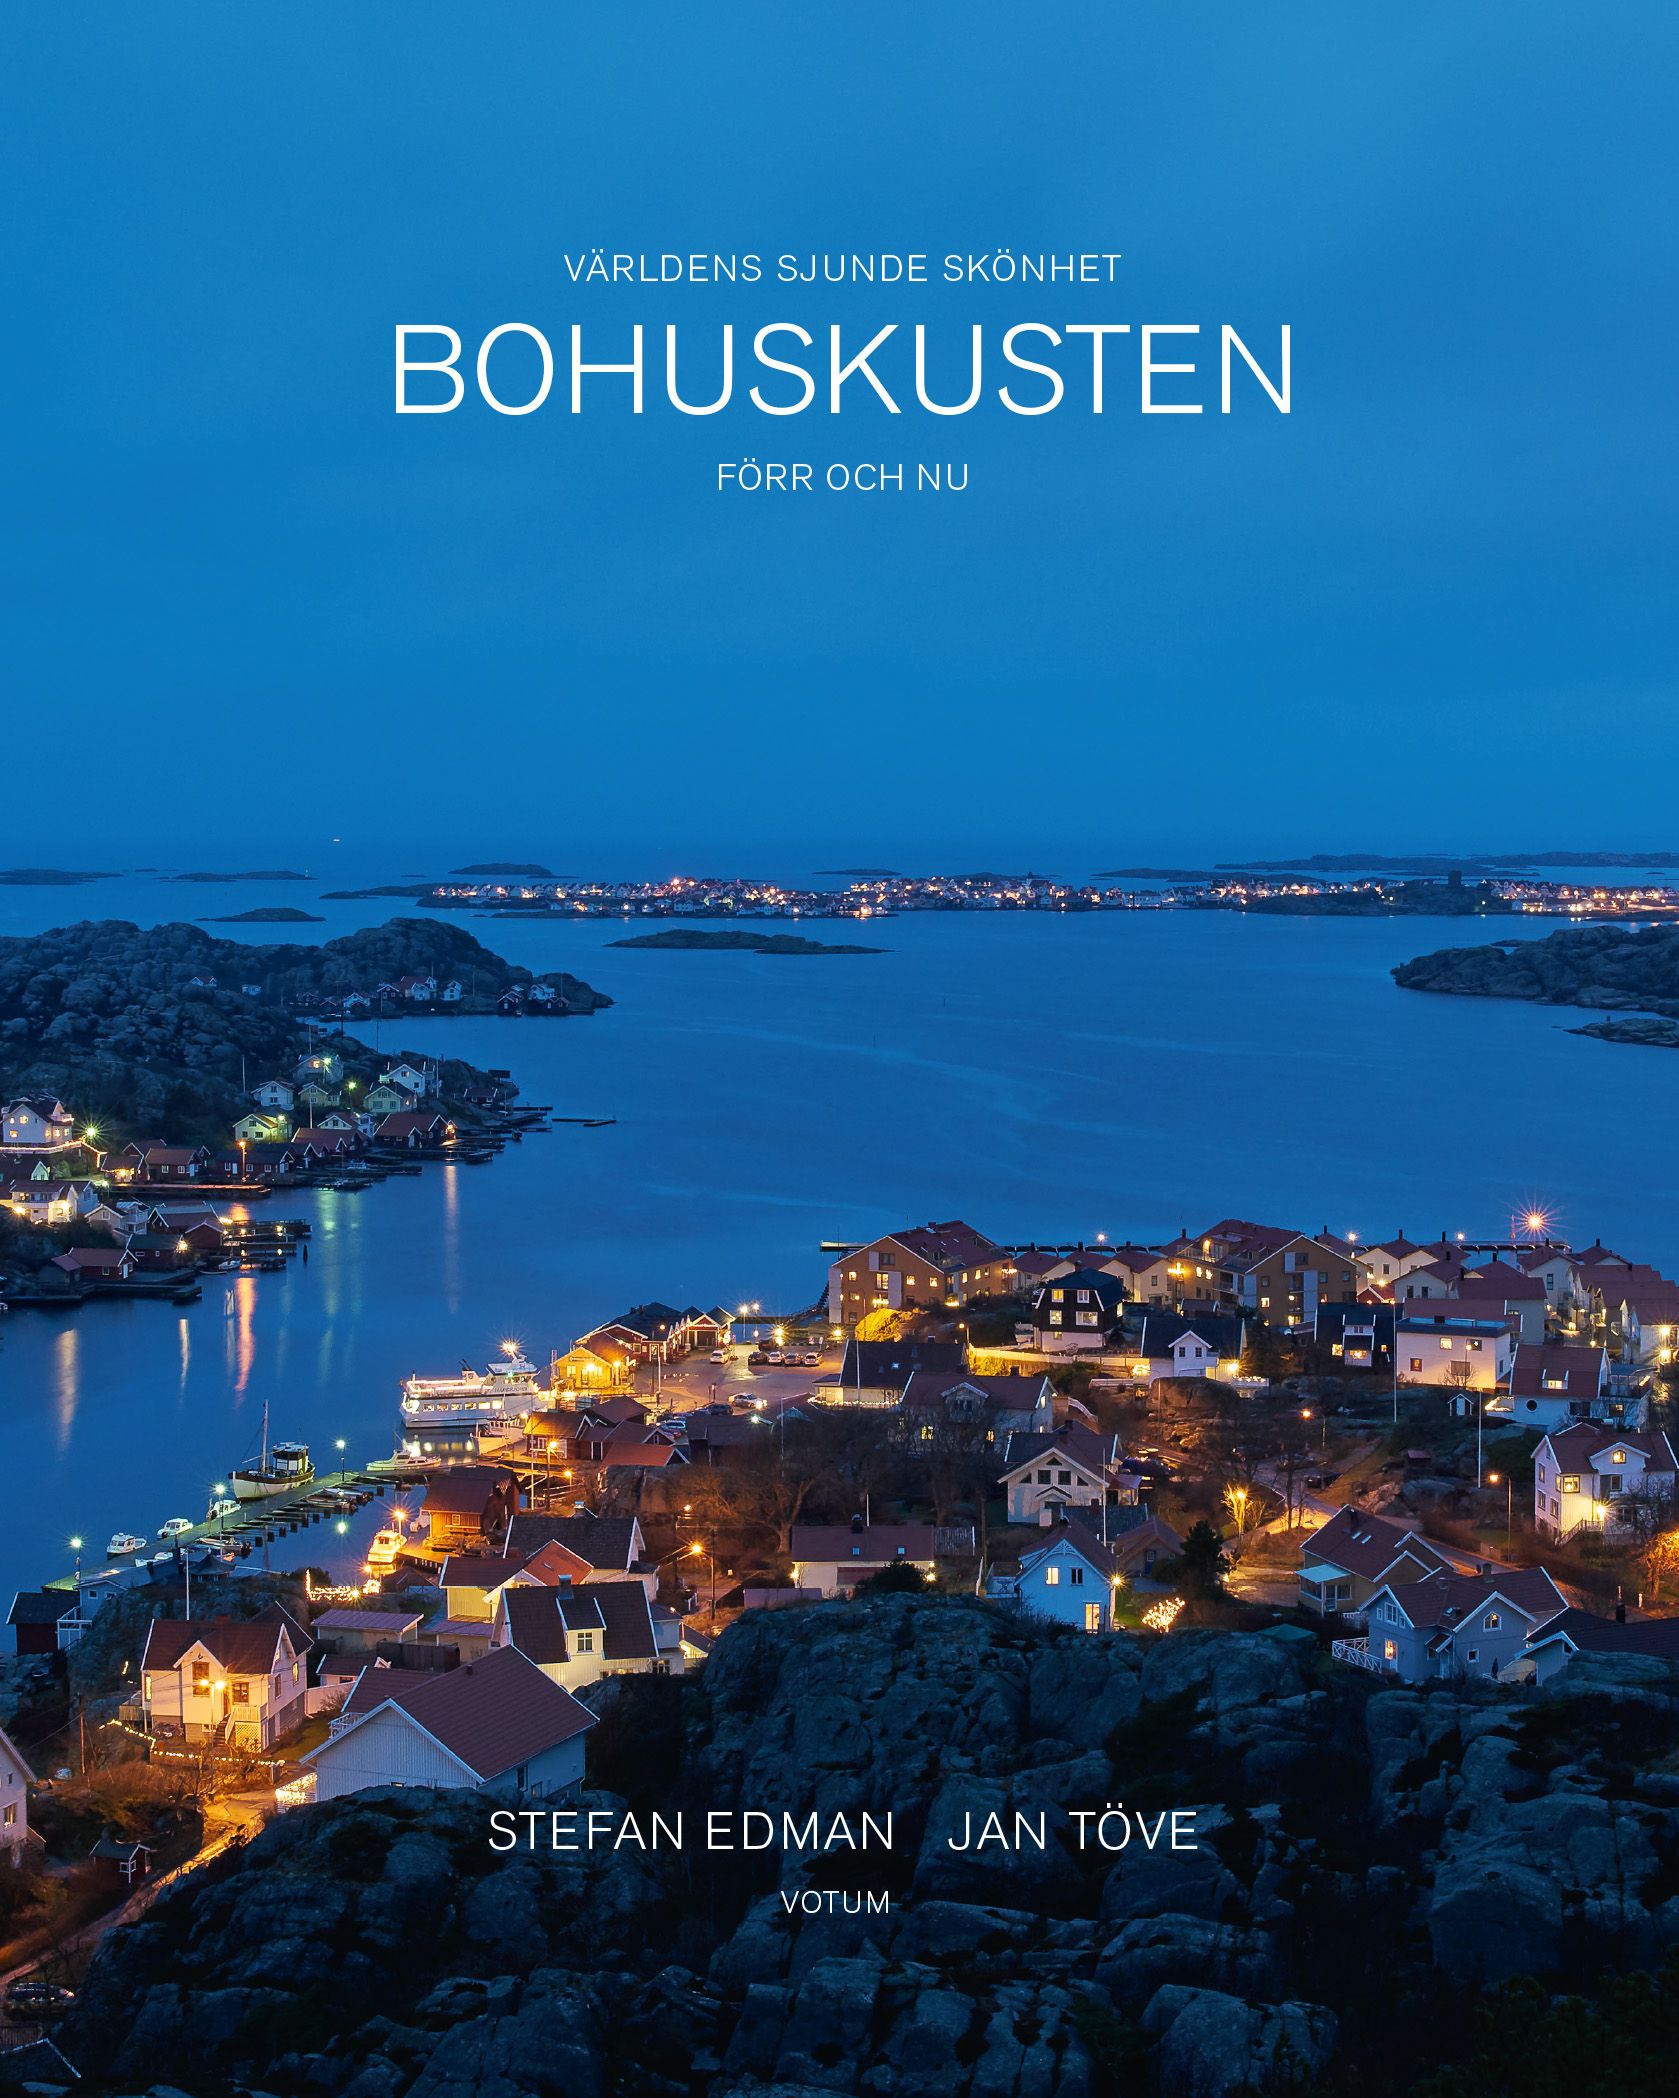 Bohuskusten förr och nu: Världens sjunde skönhet, e-bog af Stefan Edman, Jan Töve